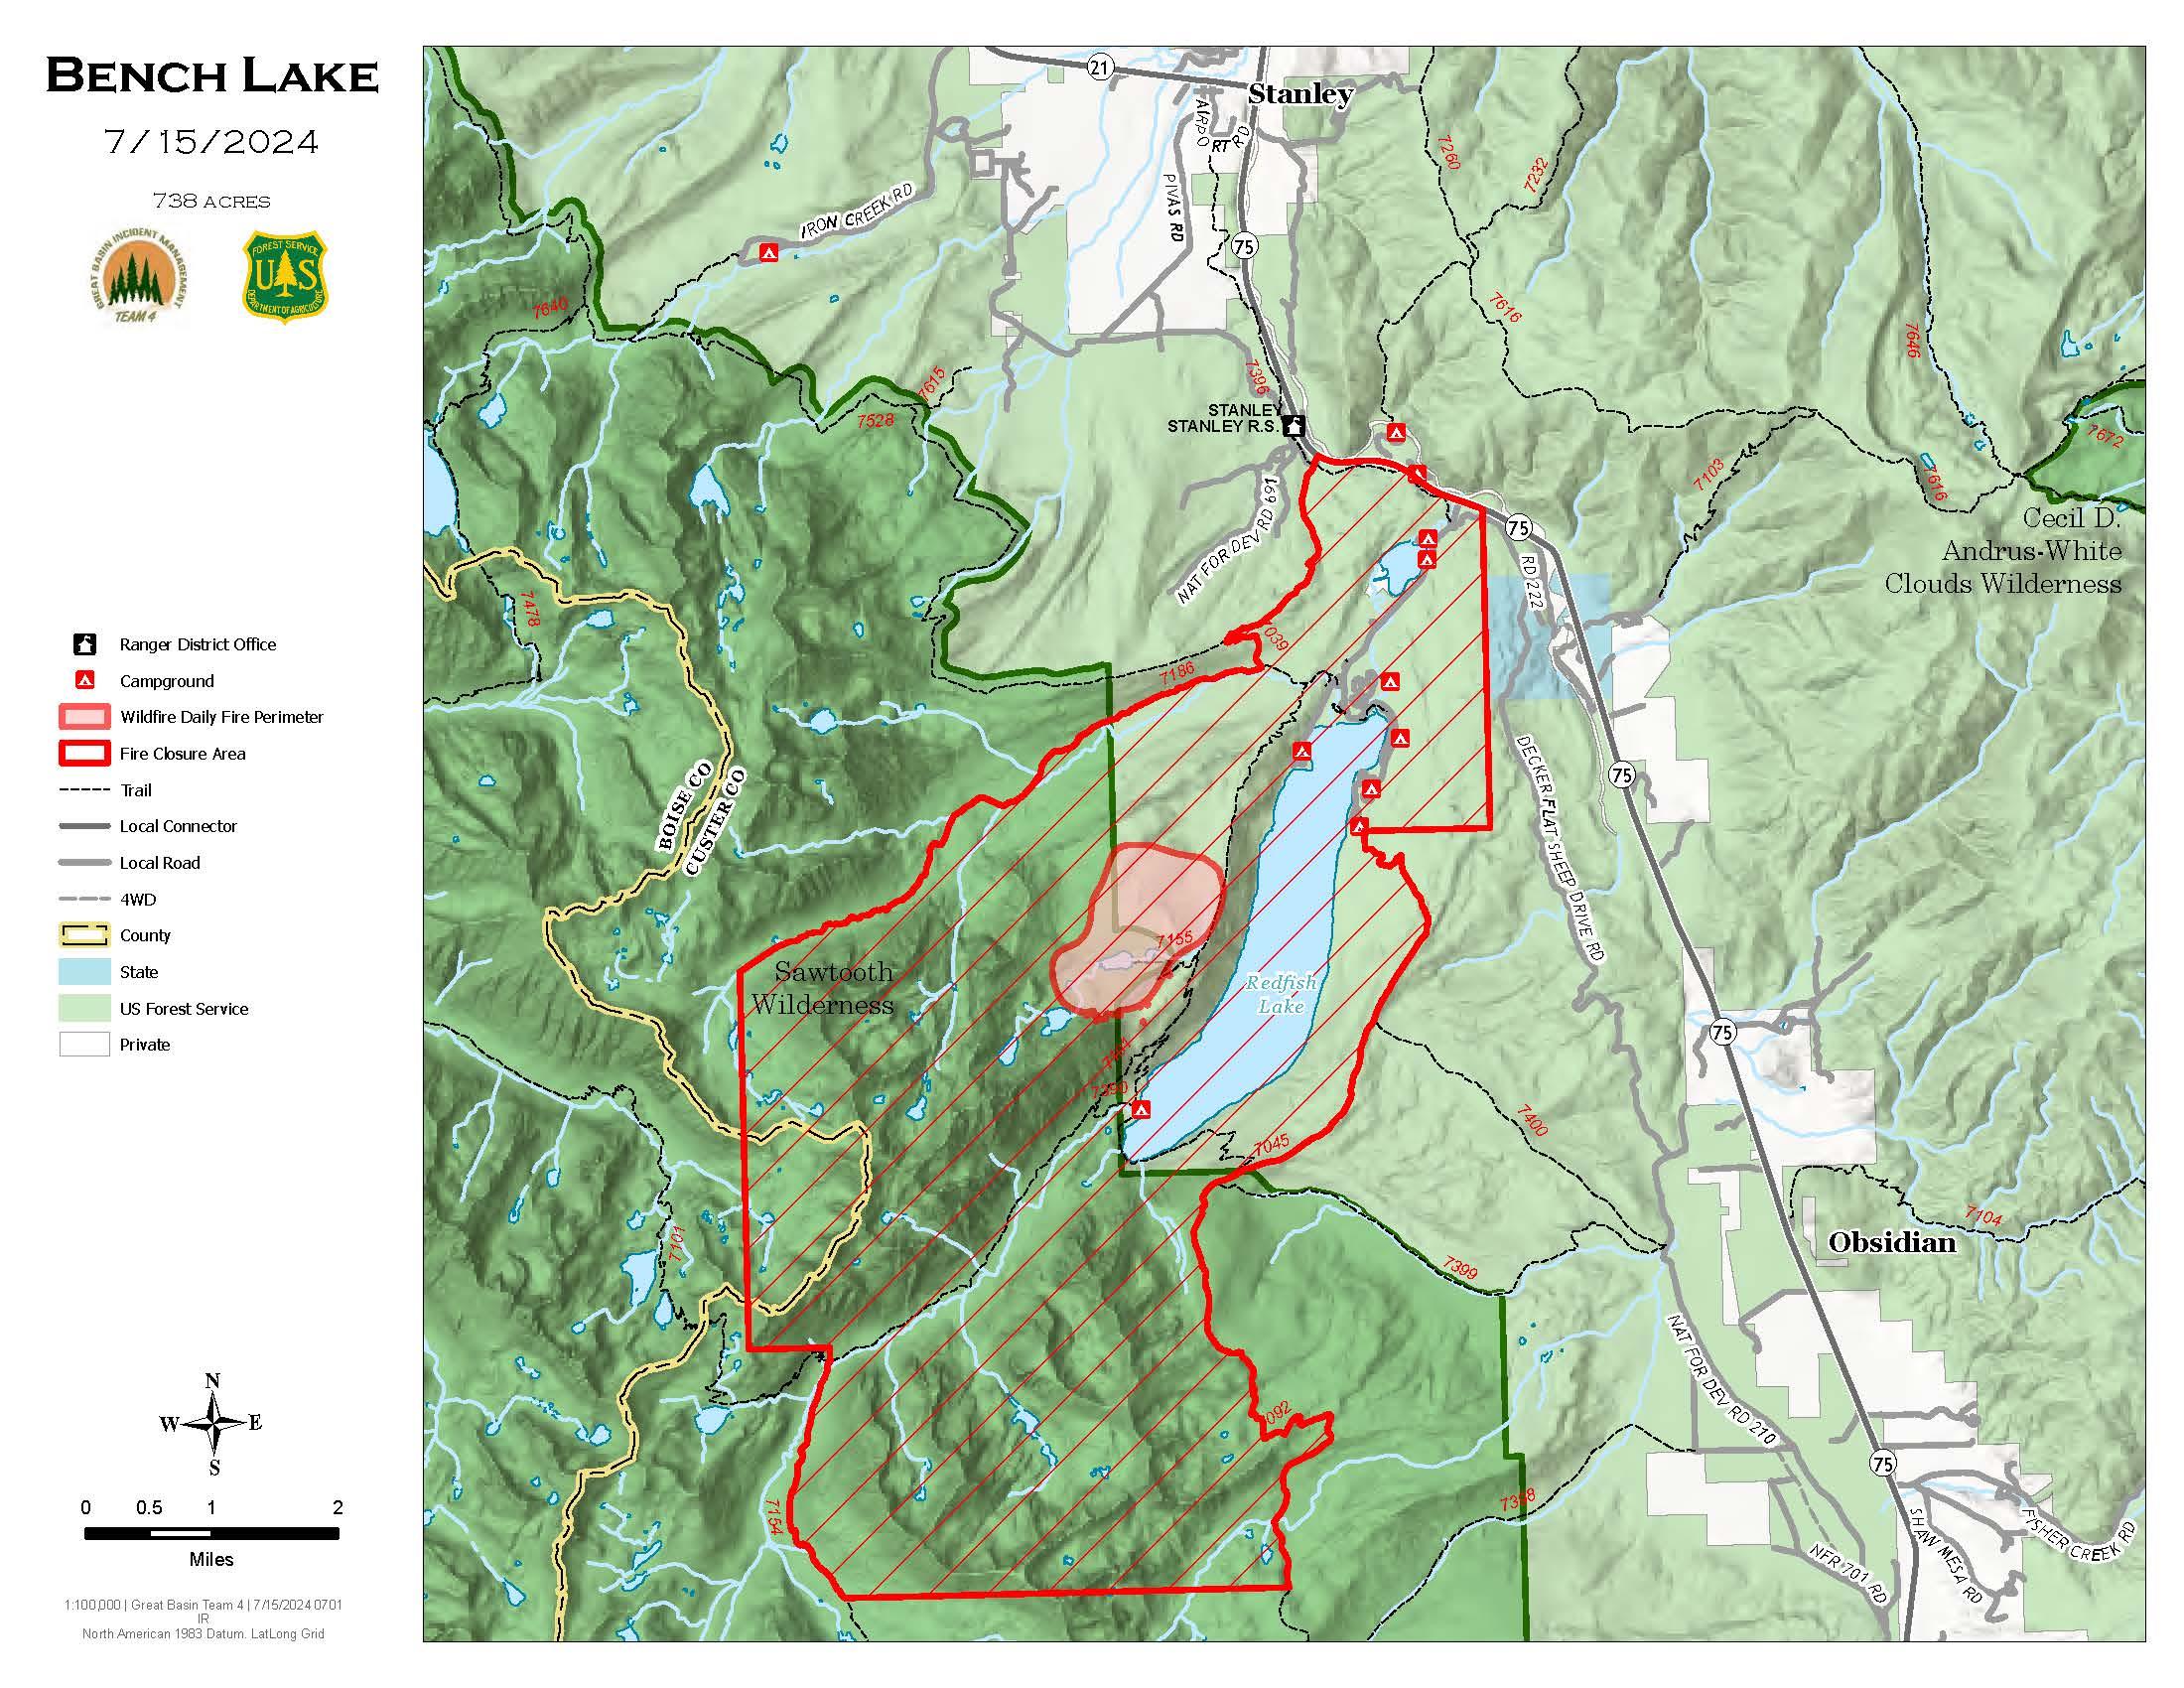 July 15 Bench Lake Fire map